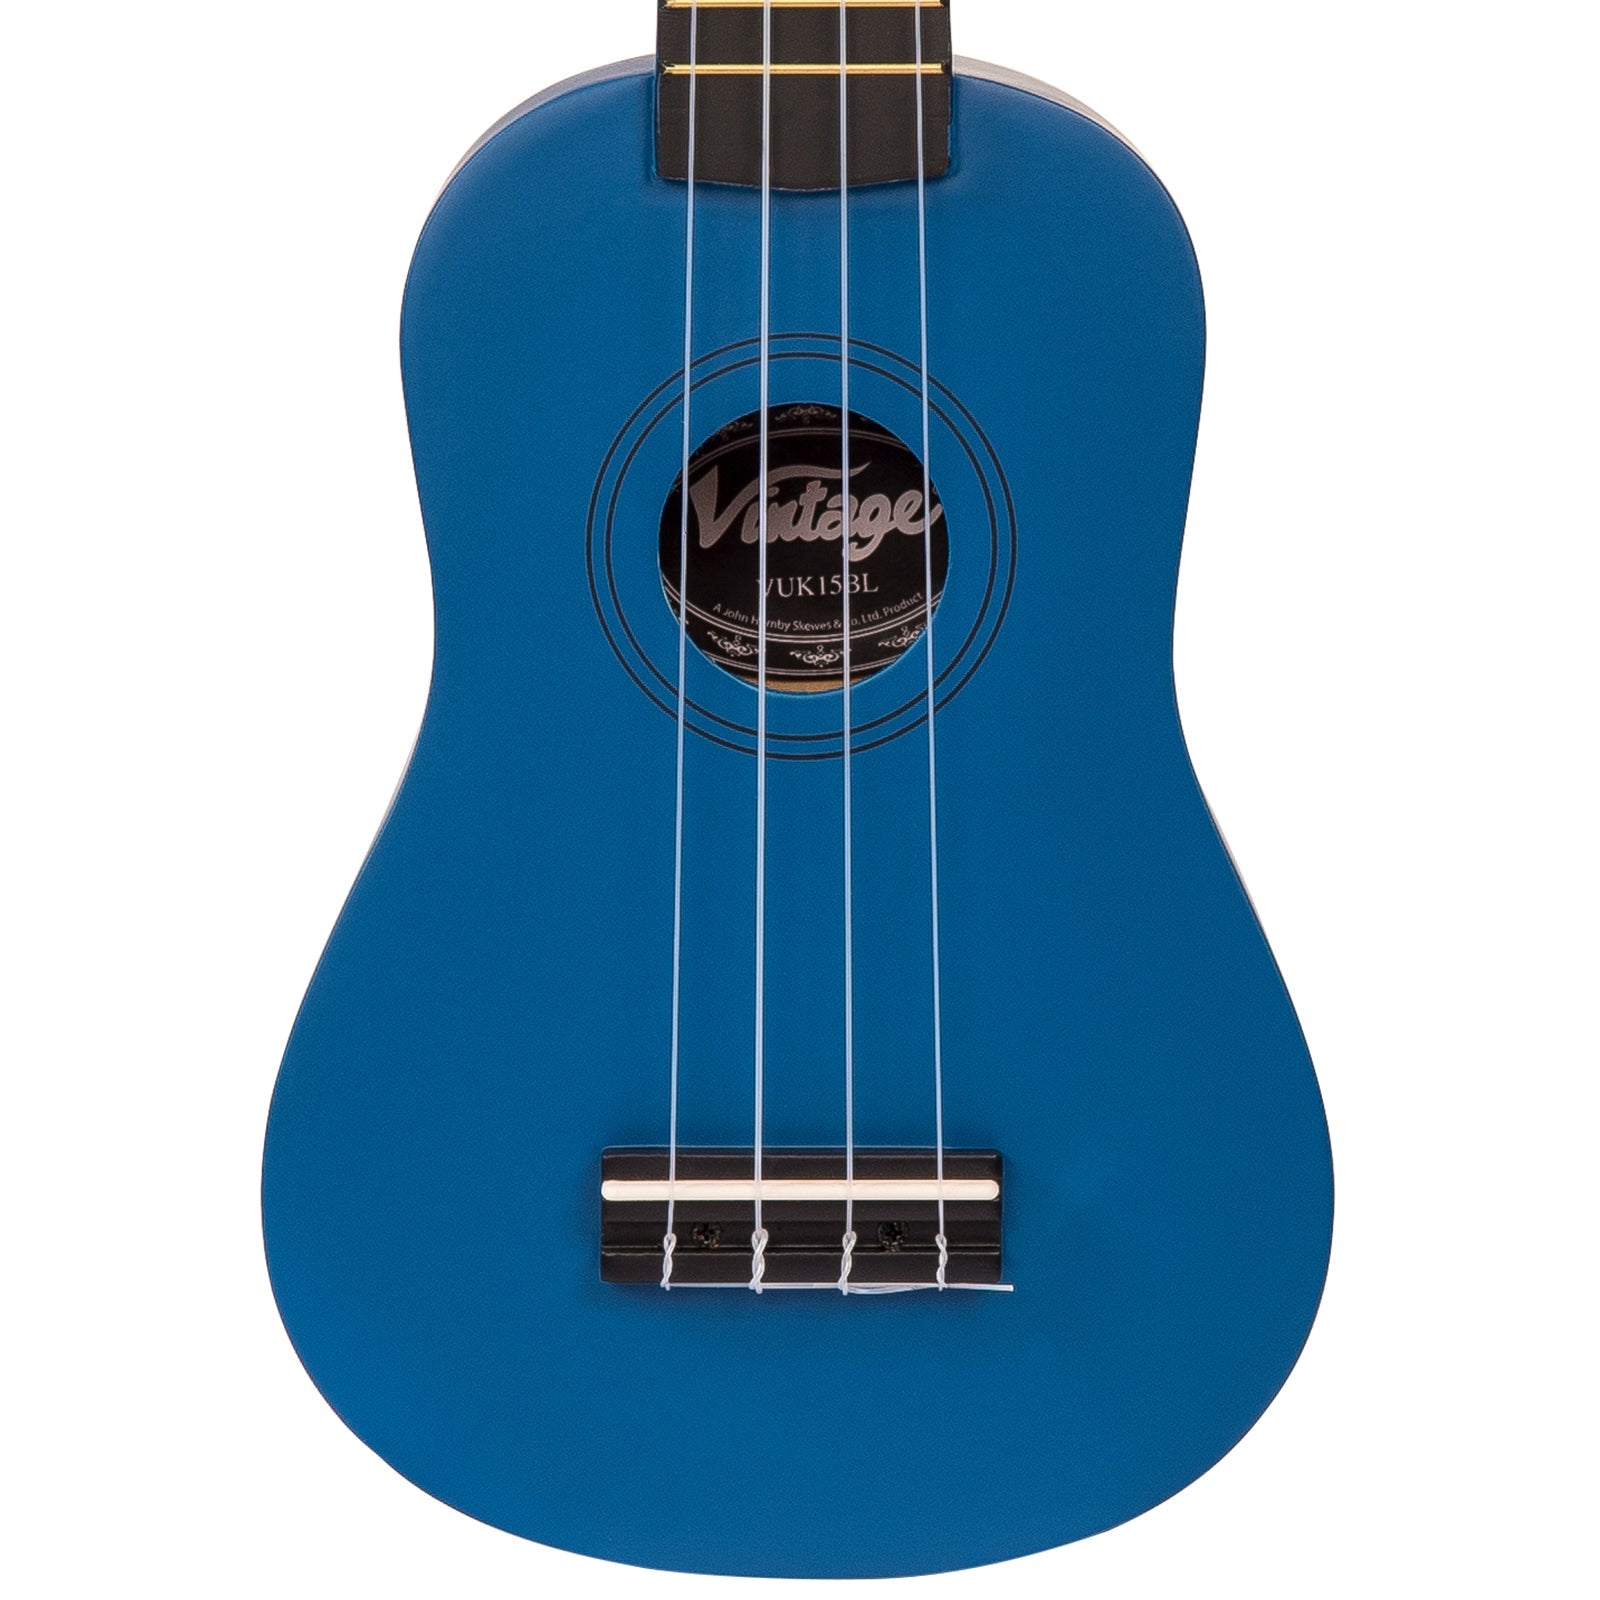 Vintage Soprano Ukulele ~ Satin Blue, Ukuleles for sale at Richards Guitars.